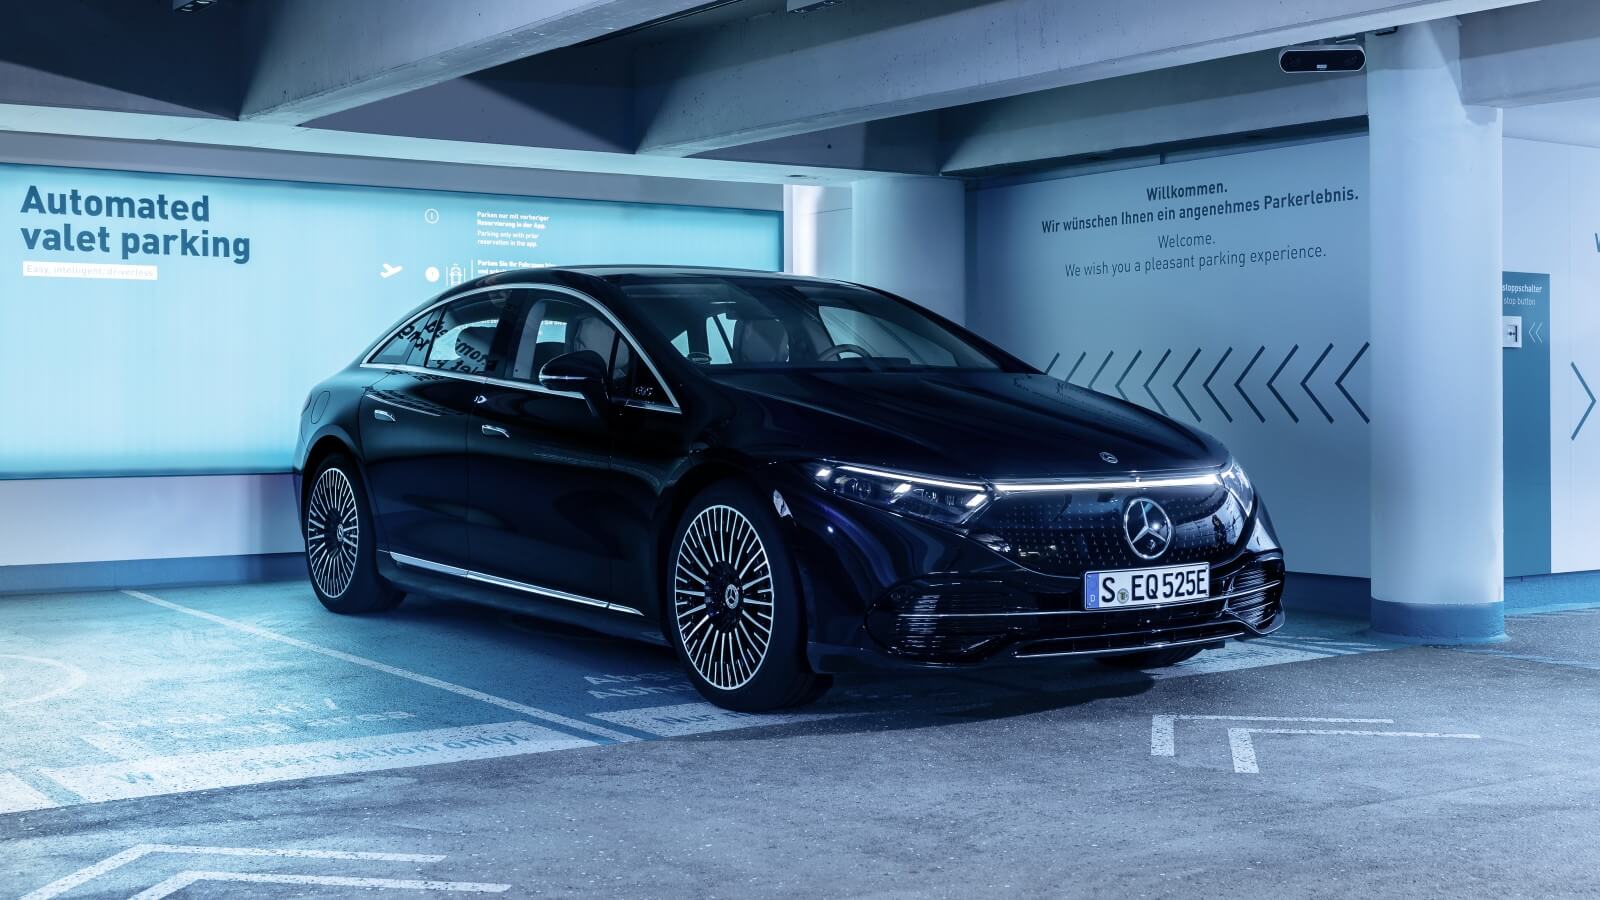 Parking autónomo Mercedes y Bosch homologado para uso comercial